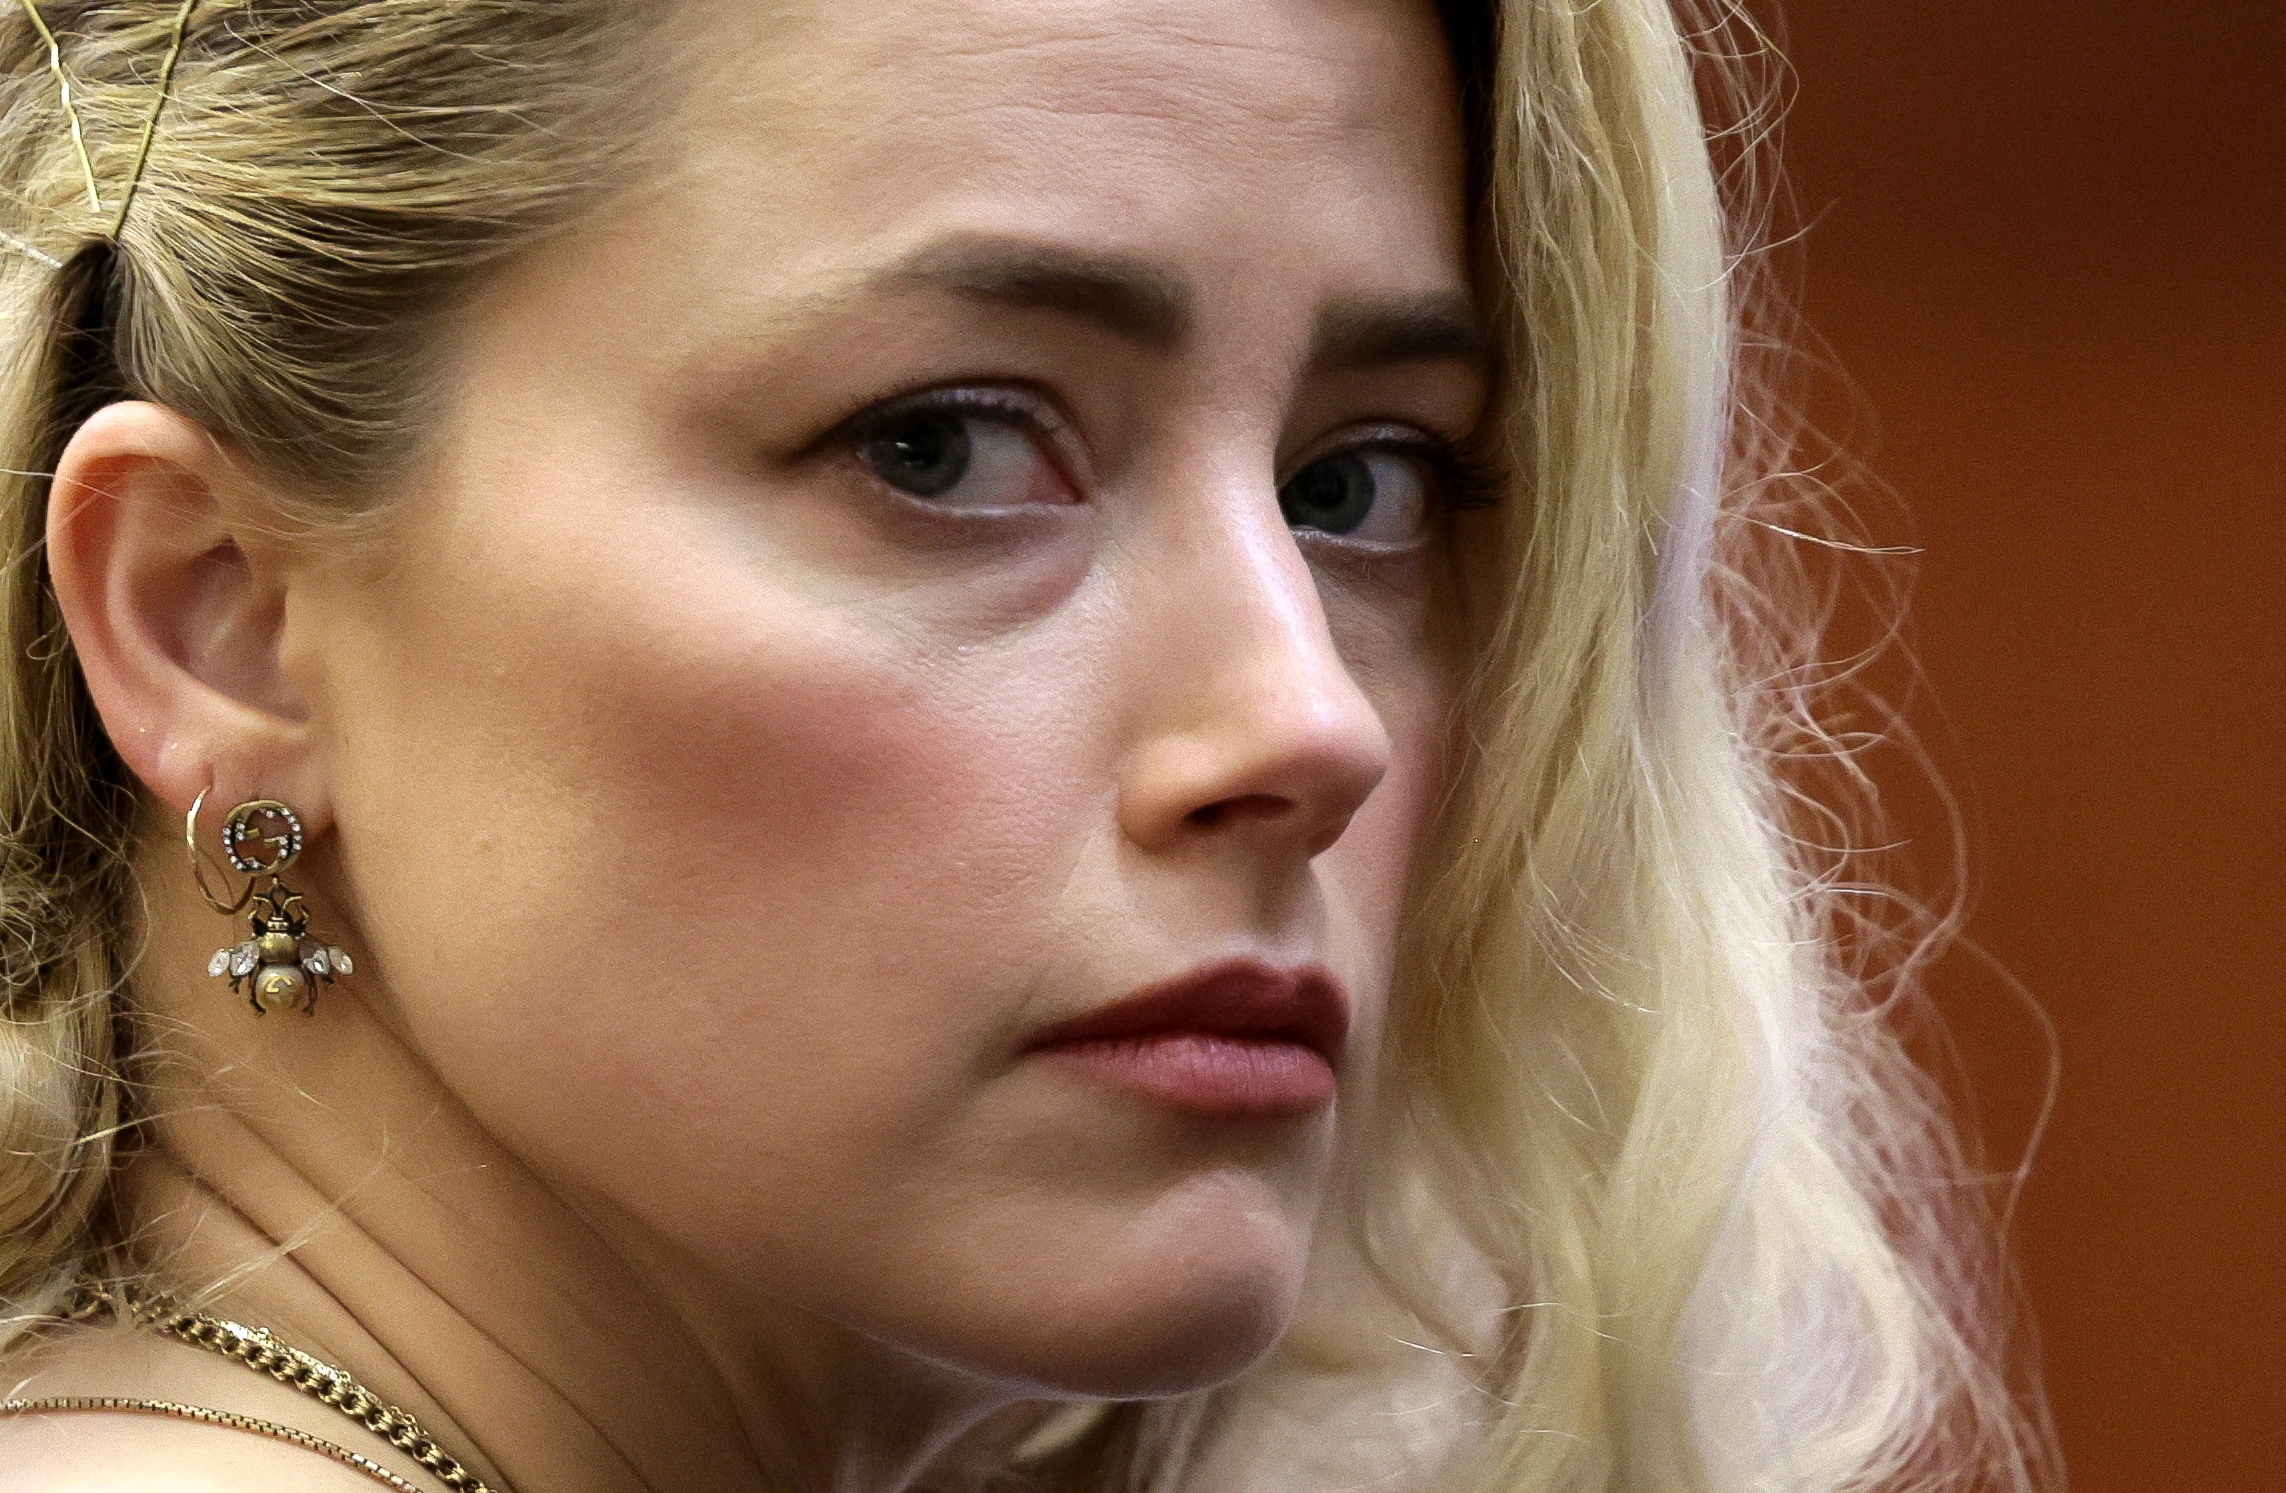 Foto de archivo: La actriz Amber Heard espera el veredicto del jurado en el juicio por difamación civil Depp vs. Heard en Fairfax, Virginia, Estados Unidos, el 1 de junio de 2022 (REUTERS/Evelyn Hockstein)